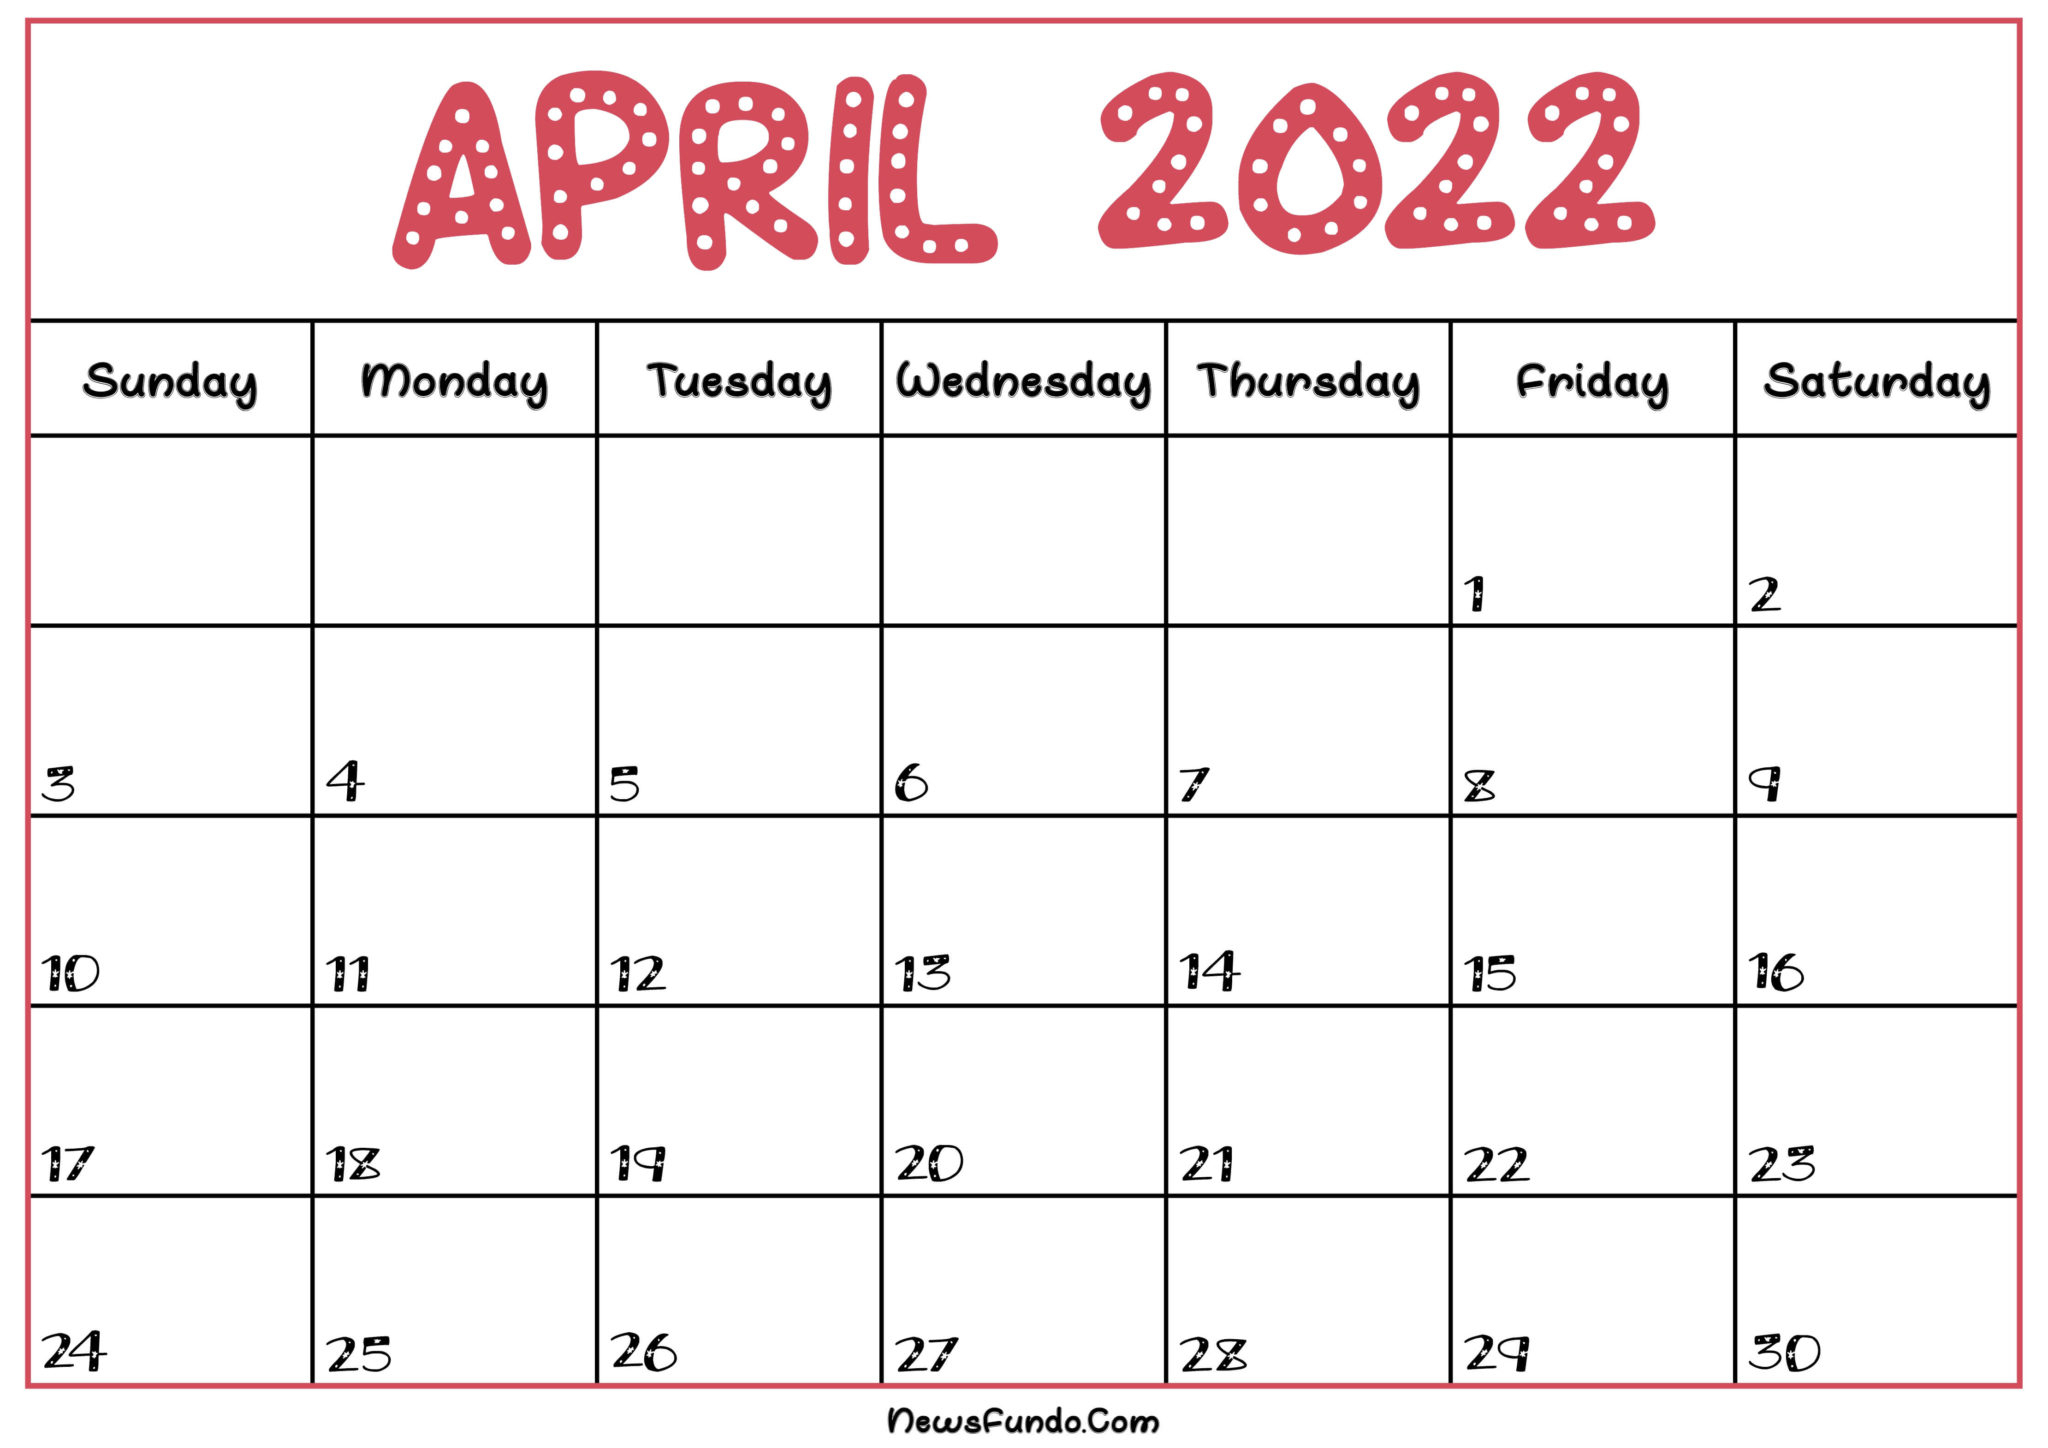 Get Print A Calendar April 2022